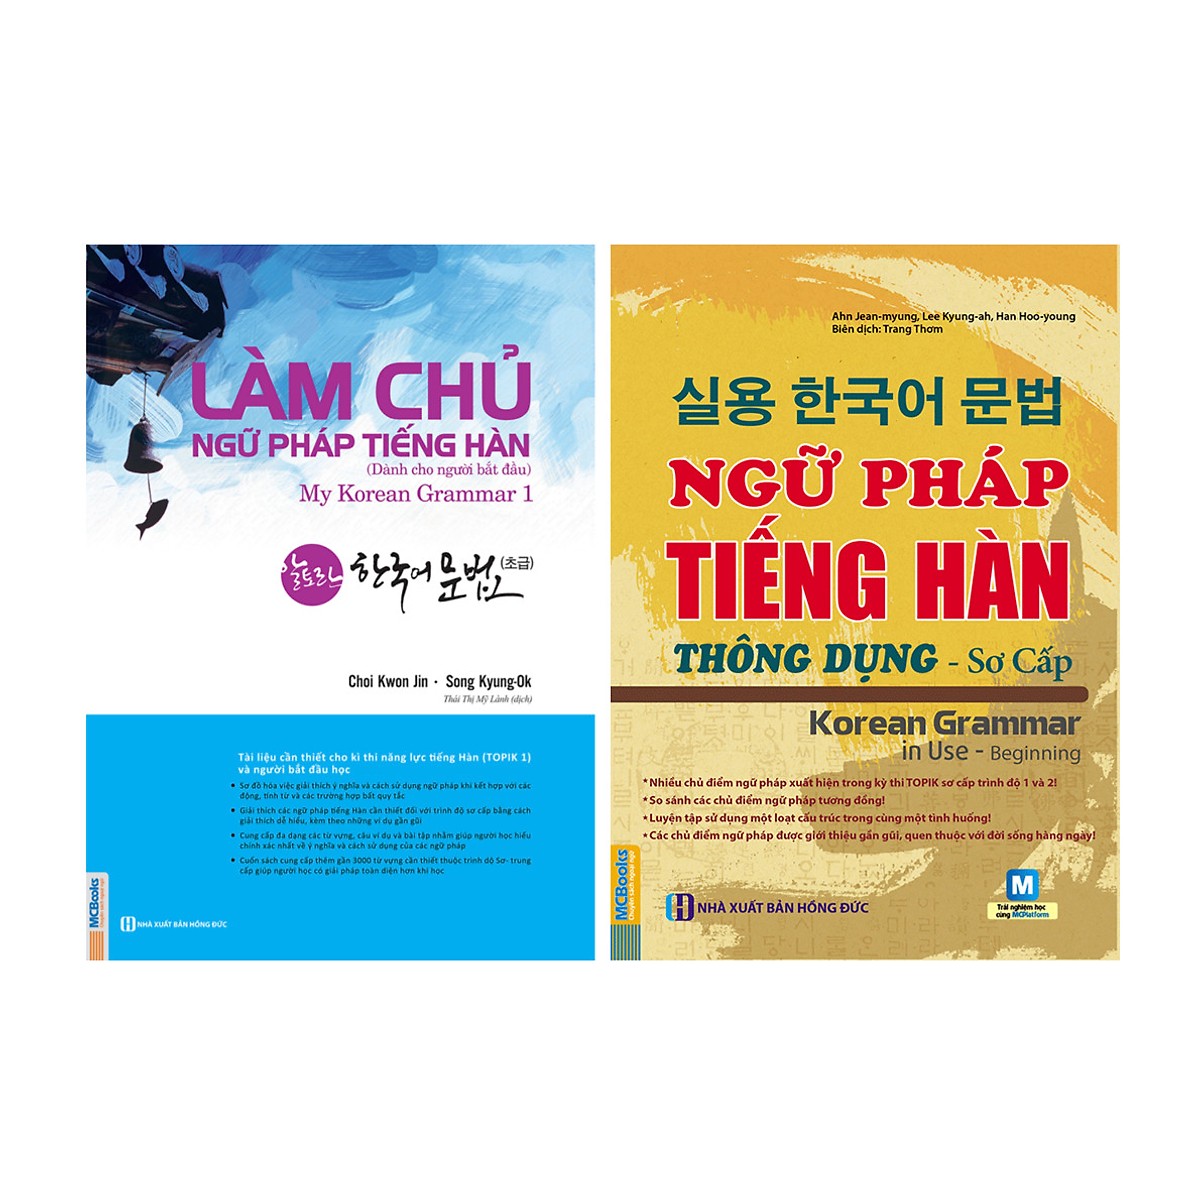 Bộ Sách Học Tiếng Hàn Cơ Bản: Làm Chủ Ngữ Pháp Tiếng Hàn Dành Cho Người Mới Bắt Đầu + Ngữ Pháp Tiếng Hàn Thông Dụng Sơ Cấp (Học Kèm App MCBooks)